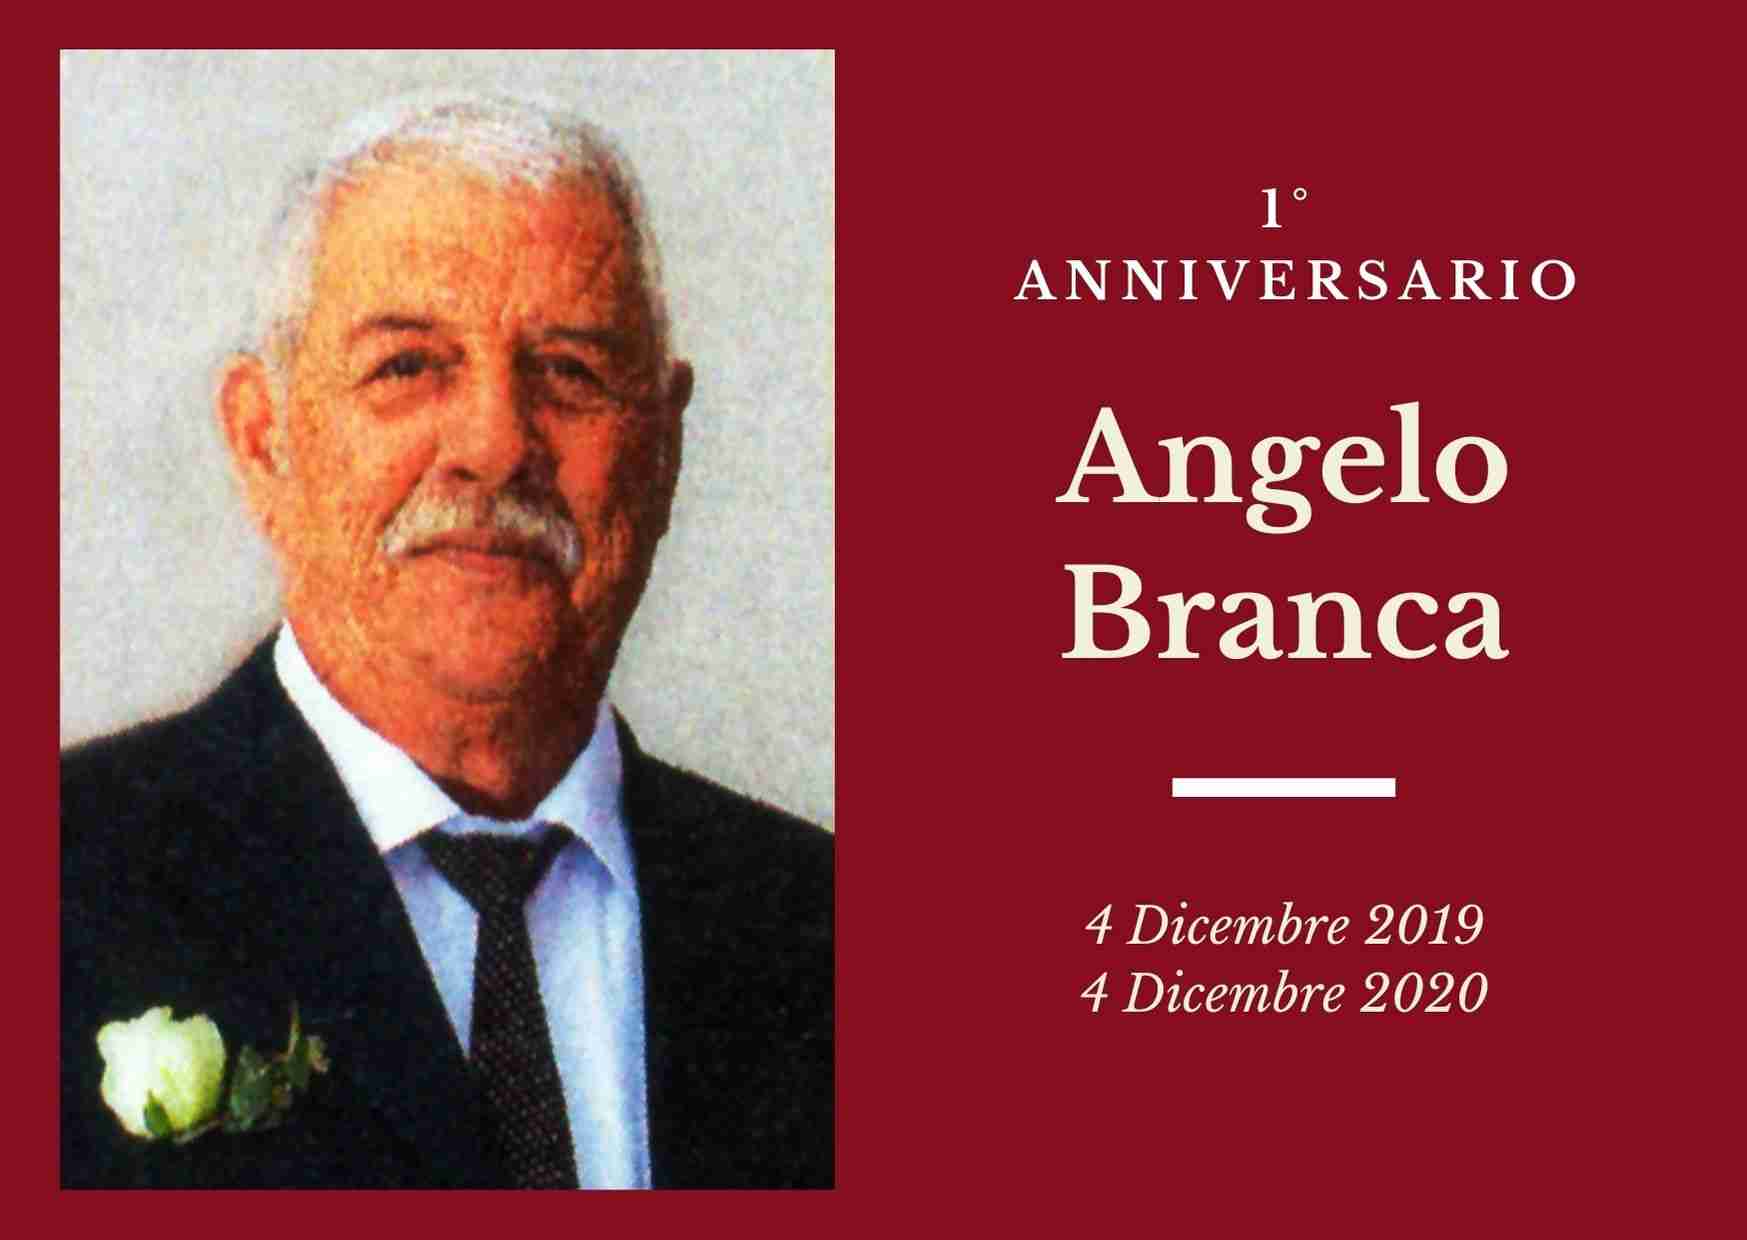 Necrologio: ricorre oggi il 1° anniversario di Angelo Branca (Mimmo)